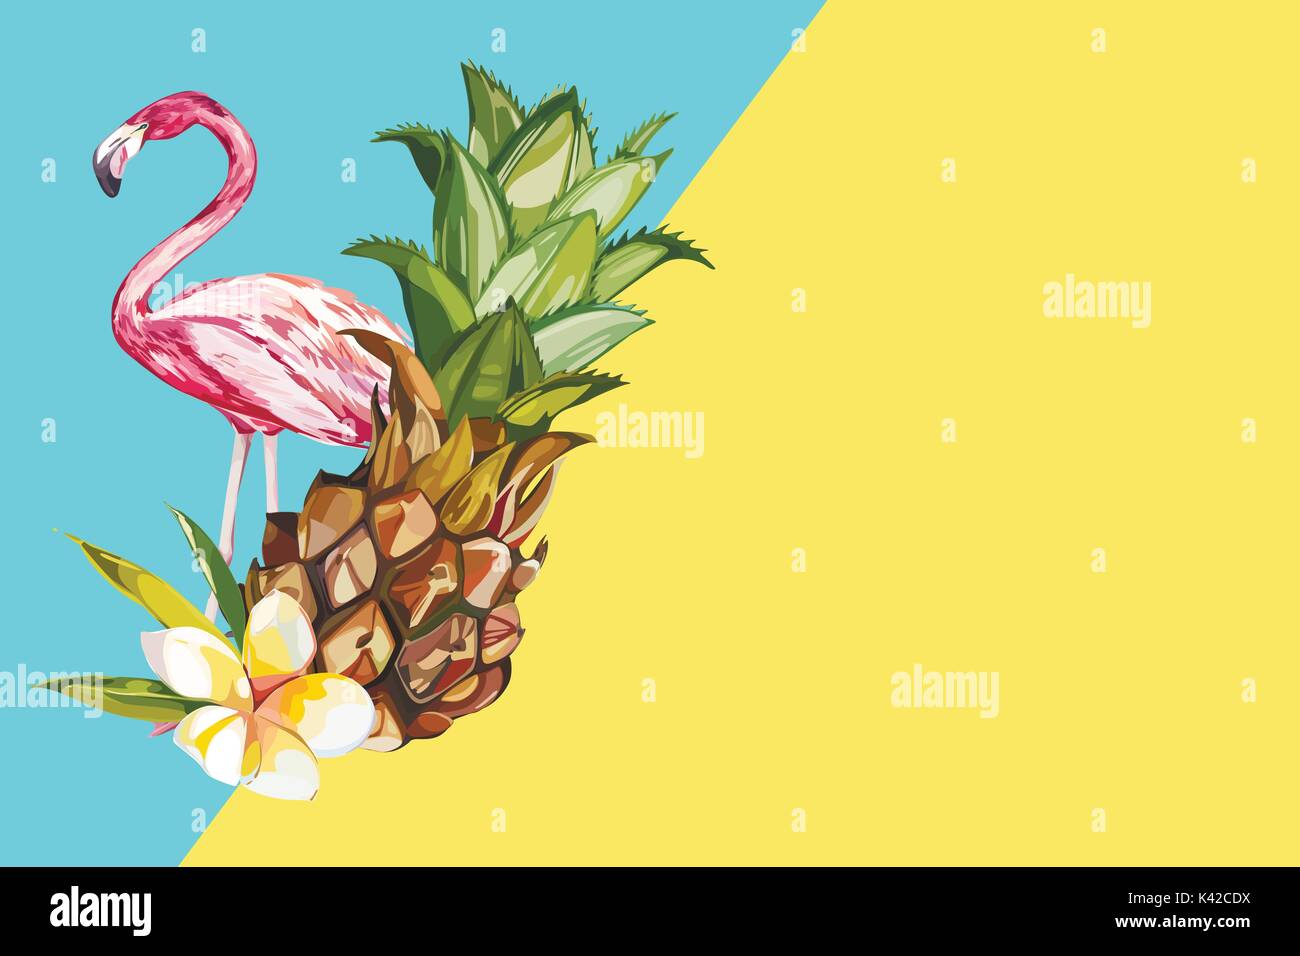 Ananas mit tropischen Blumen und Flamingo. Element für die Gestaltung von Einladungen, Filmplakate, Stoffen und anderen Objekten. Auf weiß isoliert. Vector EPS 10. Stock Vektor